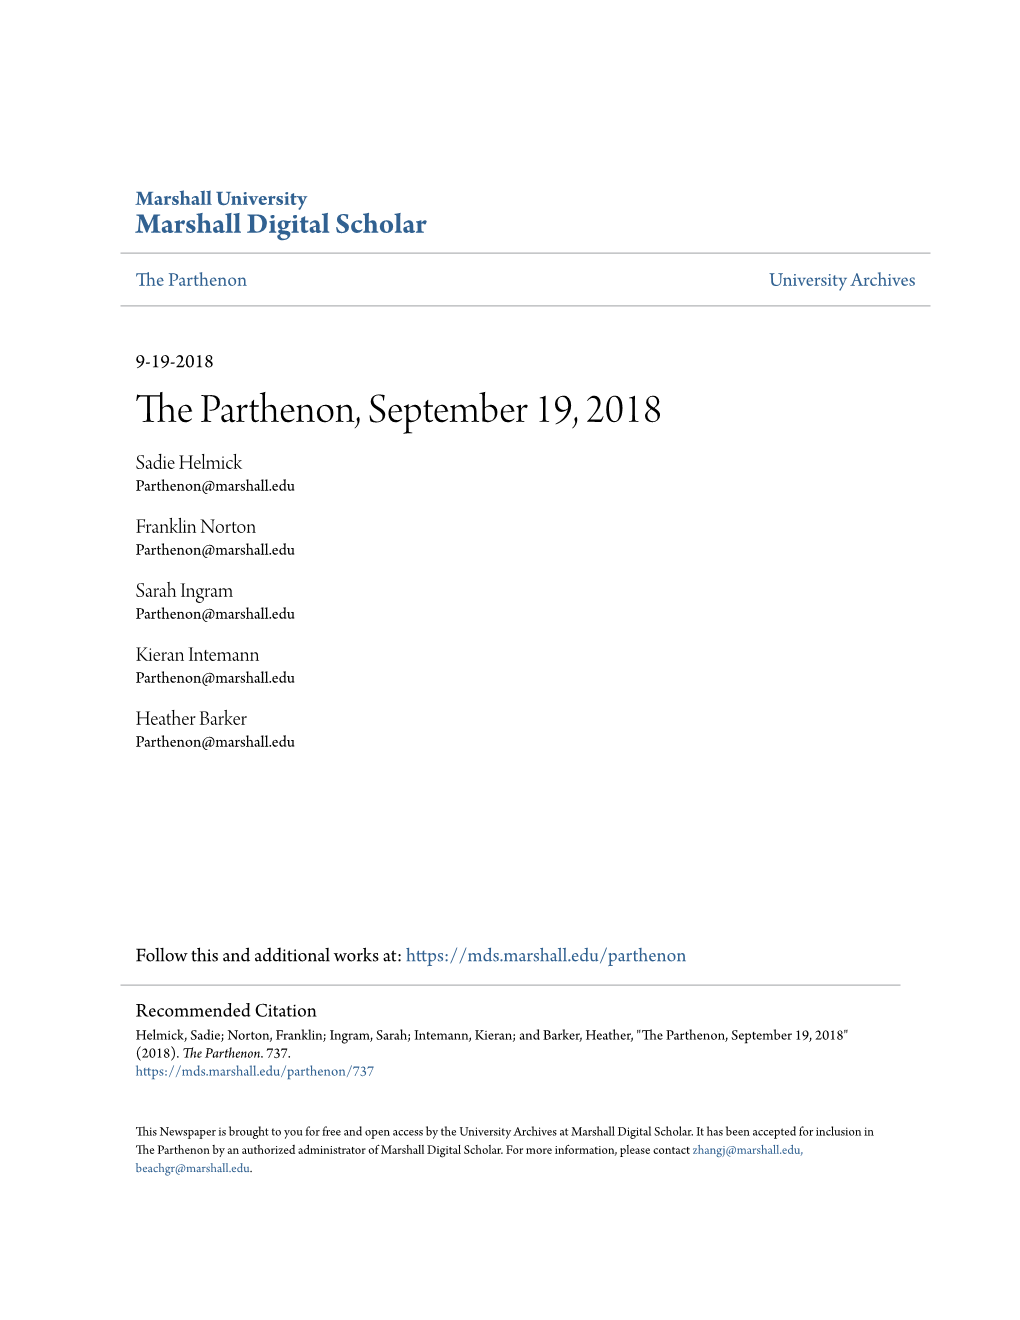 The Parthenon, September 19, 2018